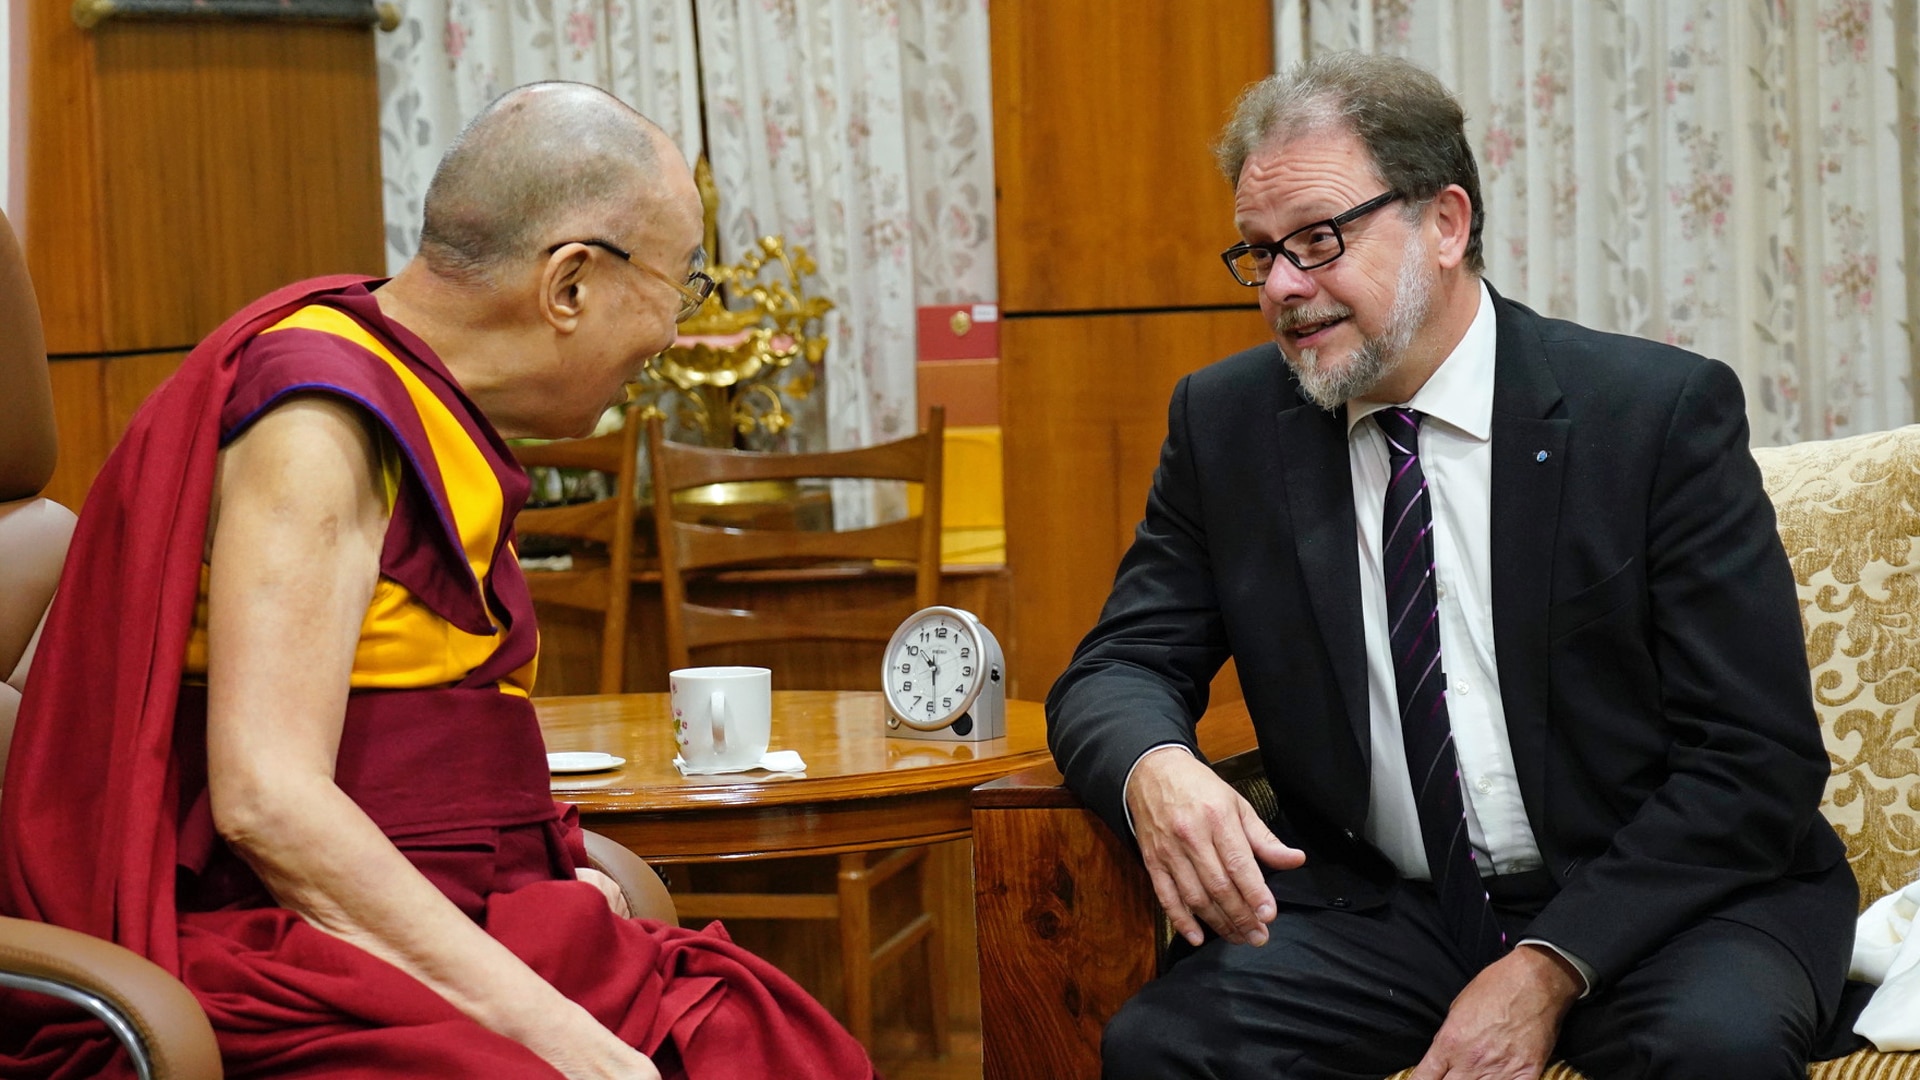 Der Bundestagsabgeordnete und Christ Frank Heinrich hat sich eine Stunde lang mit dem religiösen Oberhaupt der tibetischen Buddhisten, dem Dalai Lama, ausgetauscht – auch über den christlichen Glauben